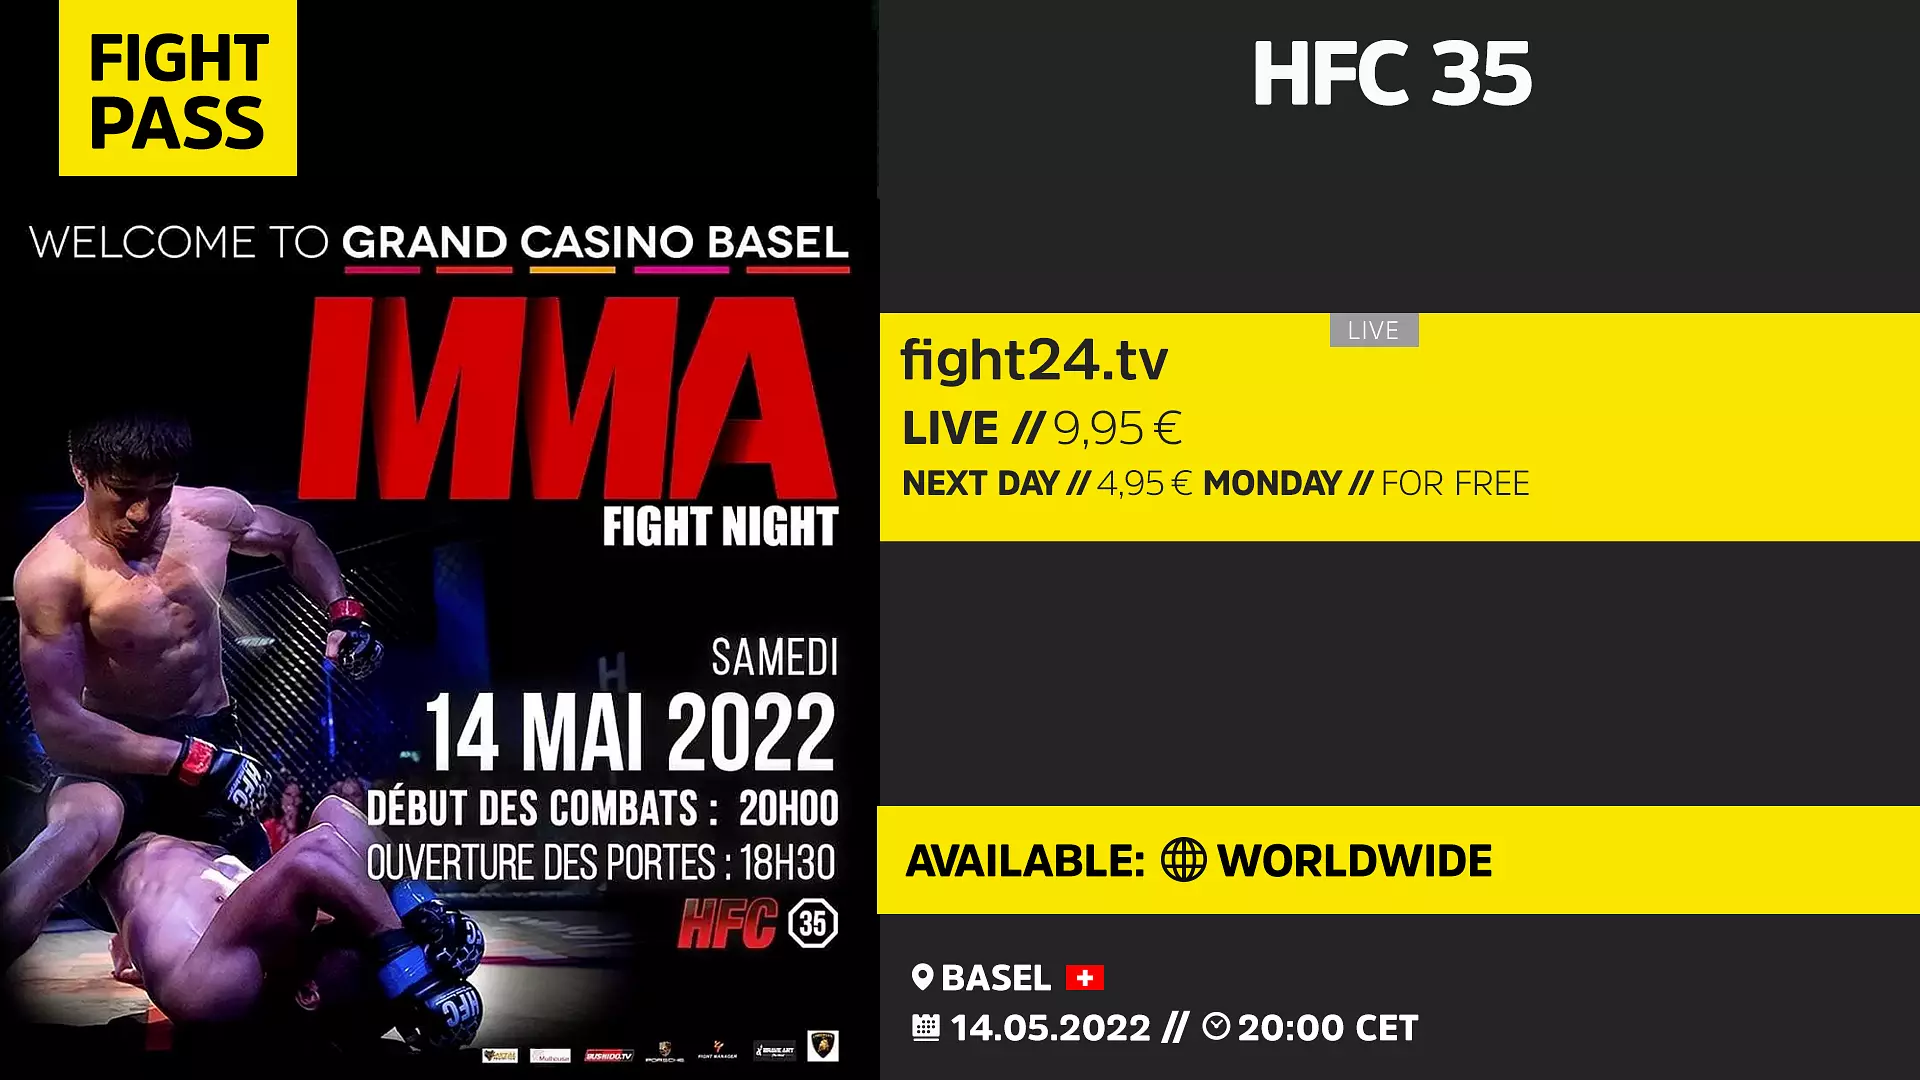 Am 19 März kommt es im Grand Casino Basel mit HFC wieder für geballten Kampfsportaktion. Wie immer präsentiert euch HFC spannende Duelle im MMA und Kickboxen.